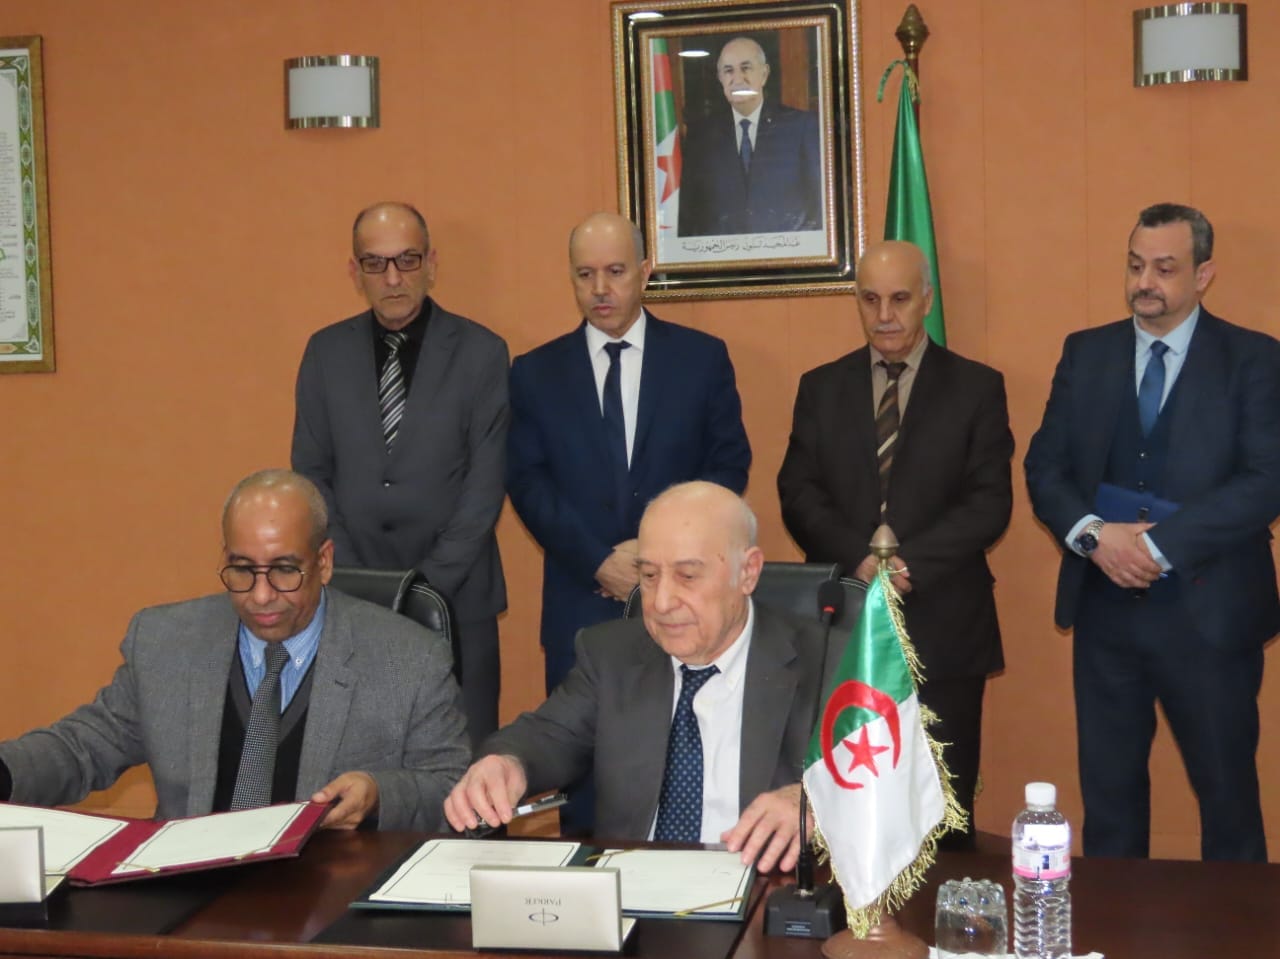 Santé : signature d’un accord de coopération entre l’Algérie et la Mauritanie dans le domaine de la greffe d’organes